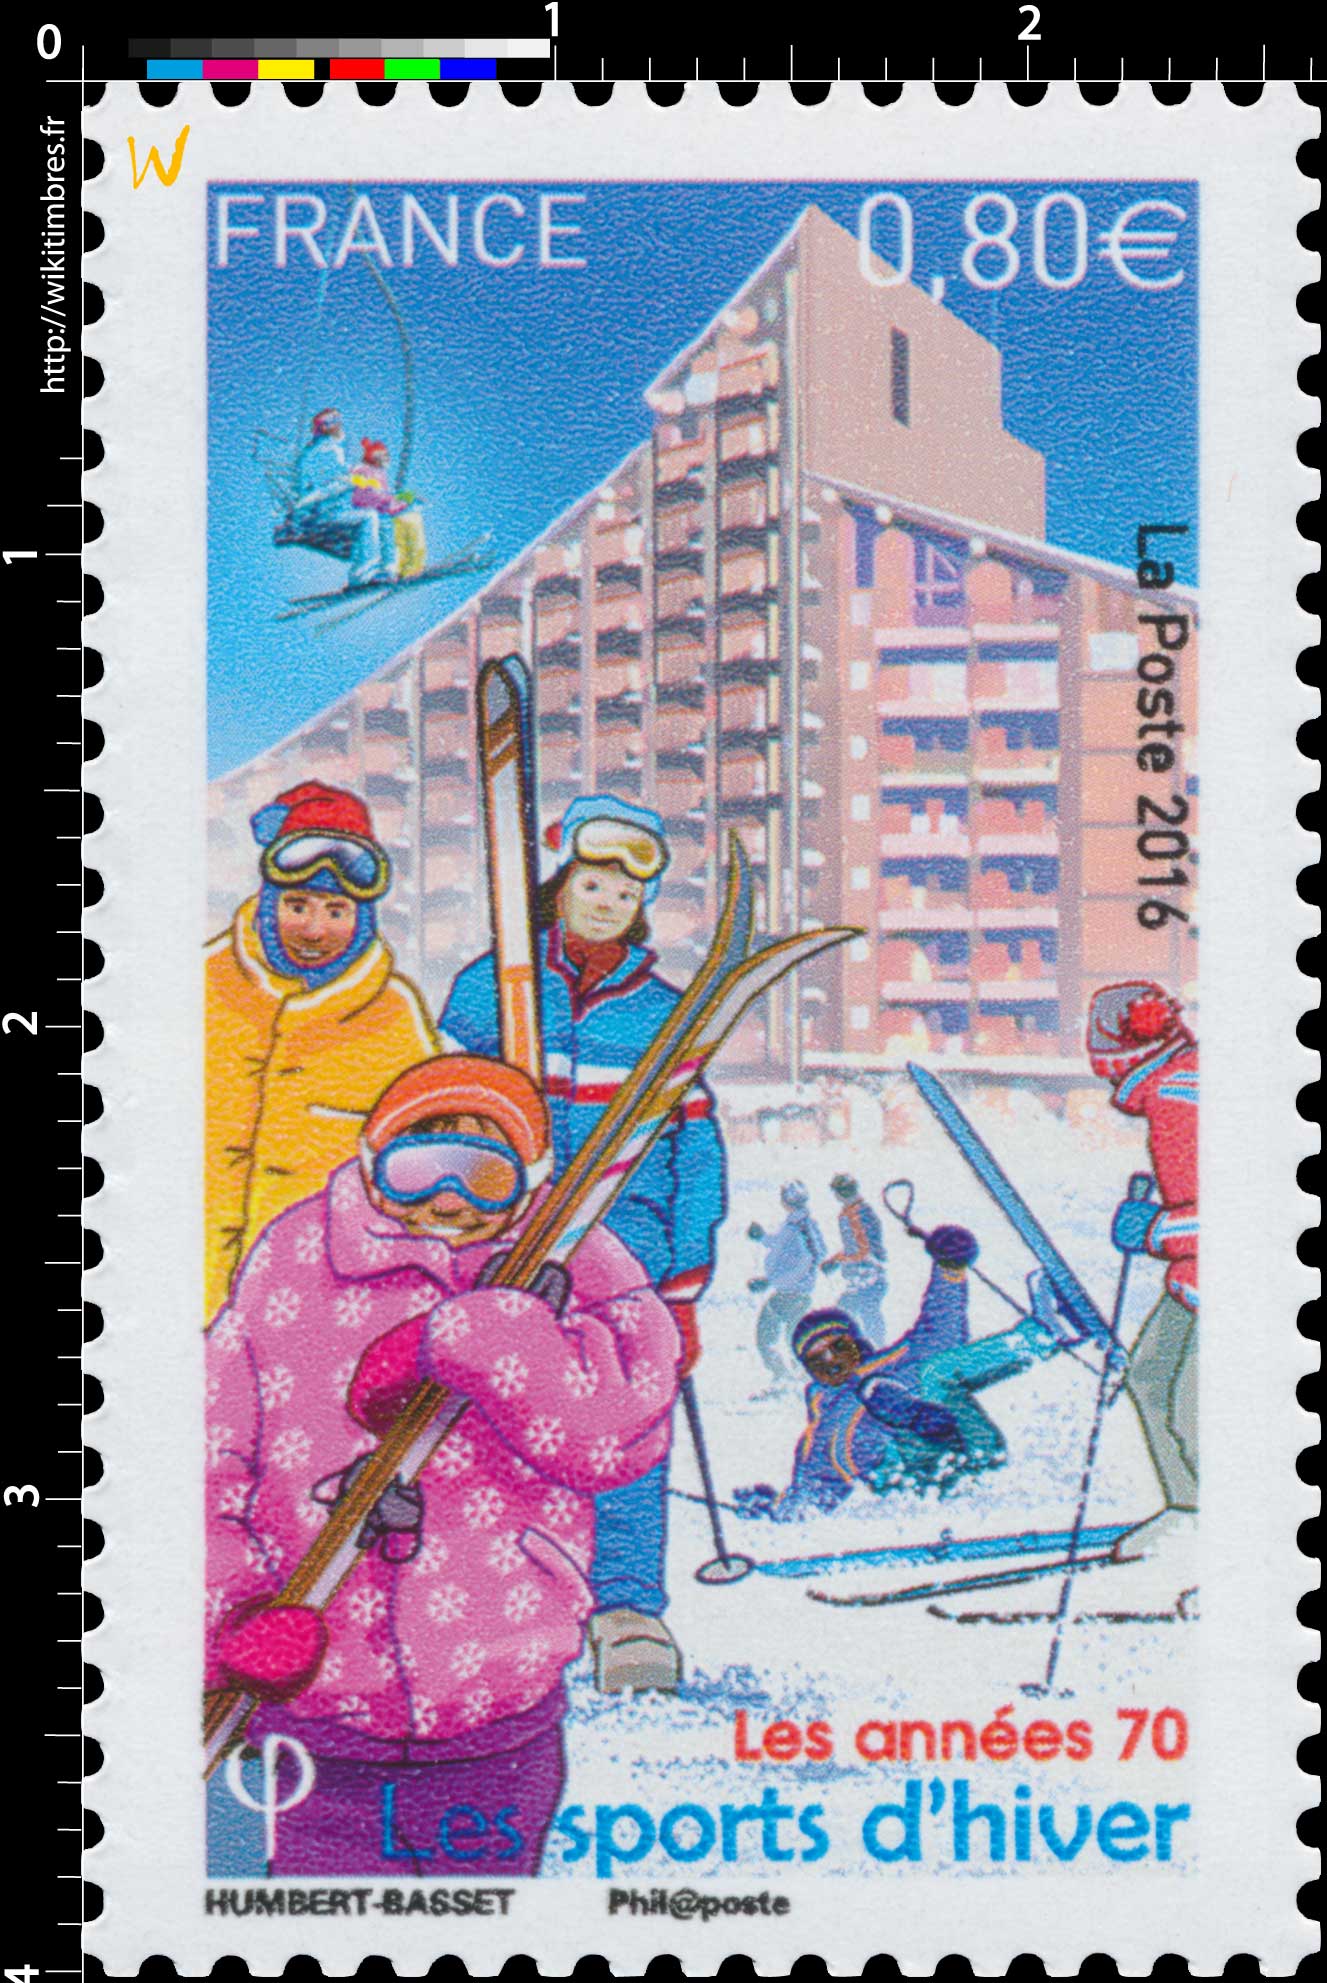 2016 Les années 70 - Les sports d'hiver